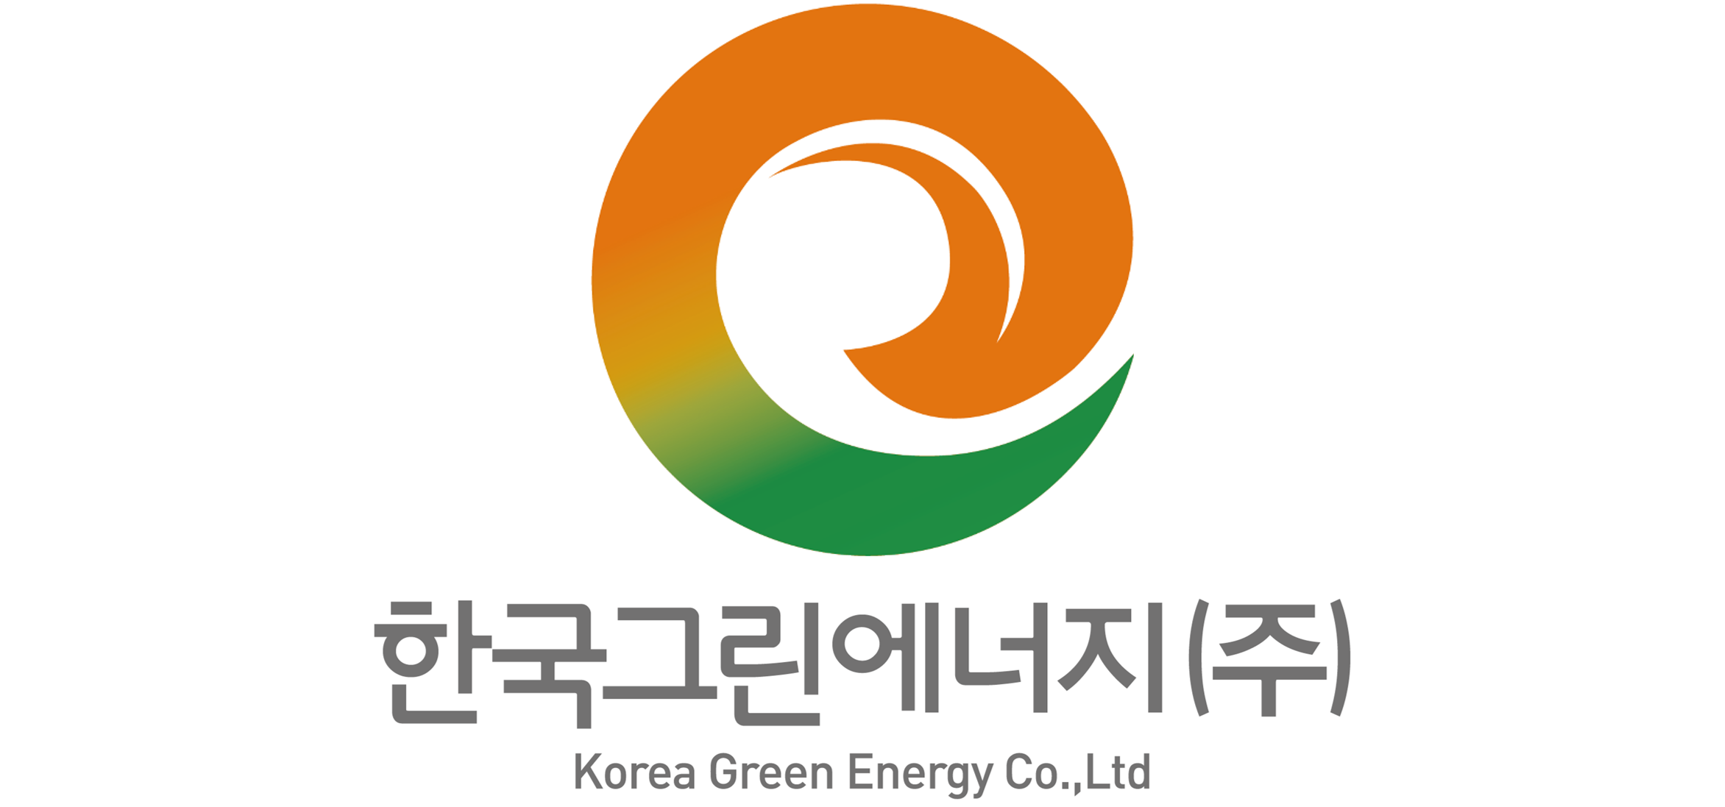 한국그린에너지(주)의 기업로고